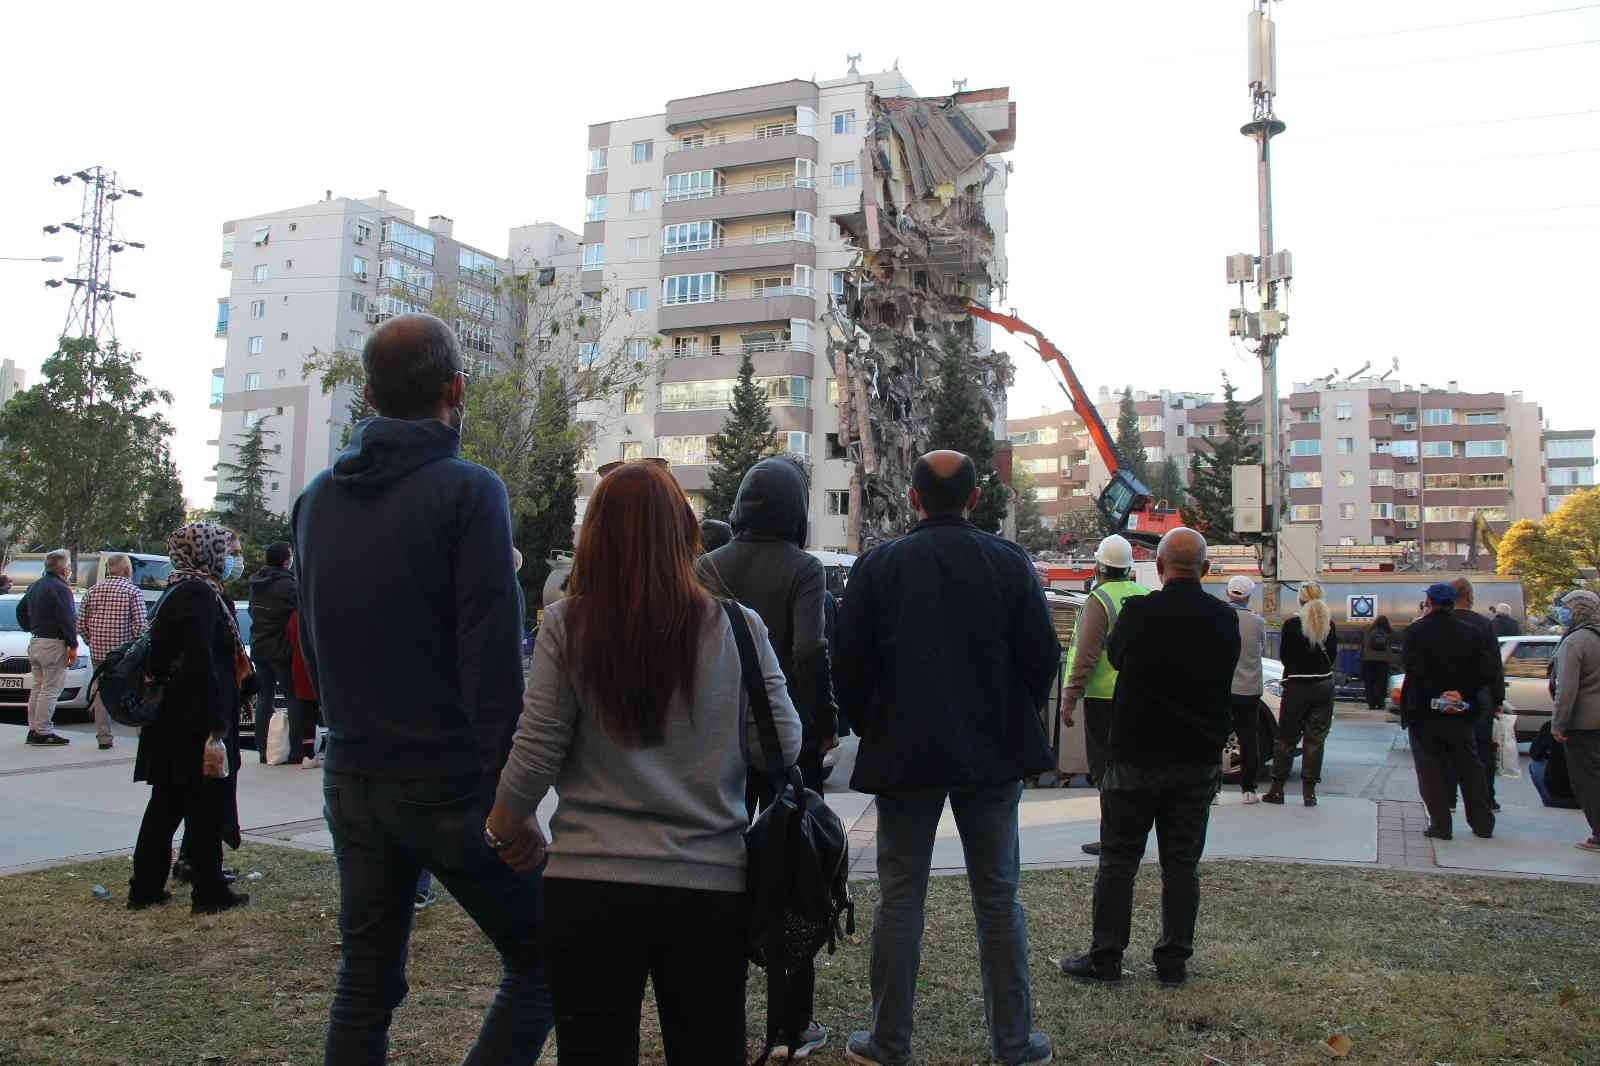 Mahkeme başkanından, depremde 11 kişinin öldüğü binadaki BİM’e suç duyurusu #izmir